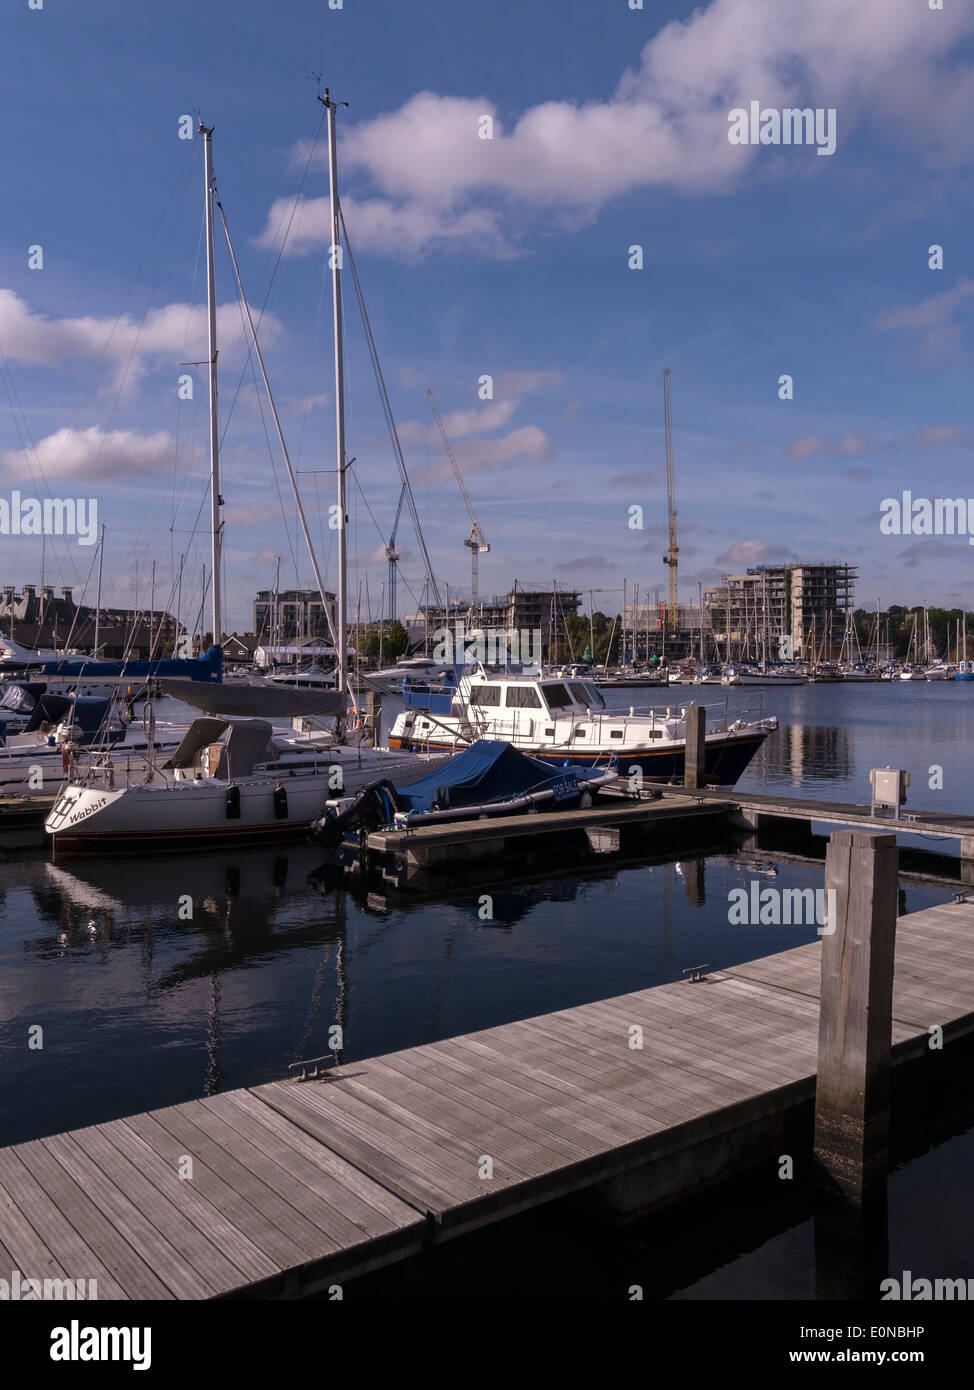 Neptuno marina con extensas obras de construcción y grúas en la distancia durante el dockside reurbanización/regeneración, Ipswich Foto de stock